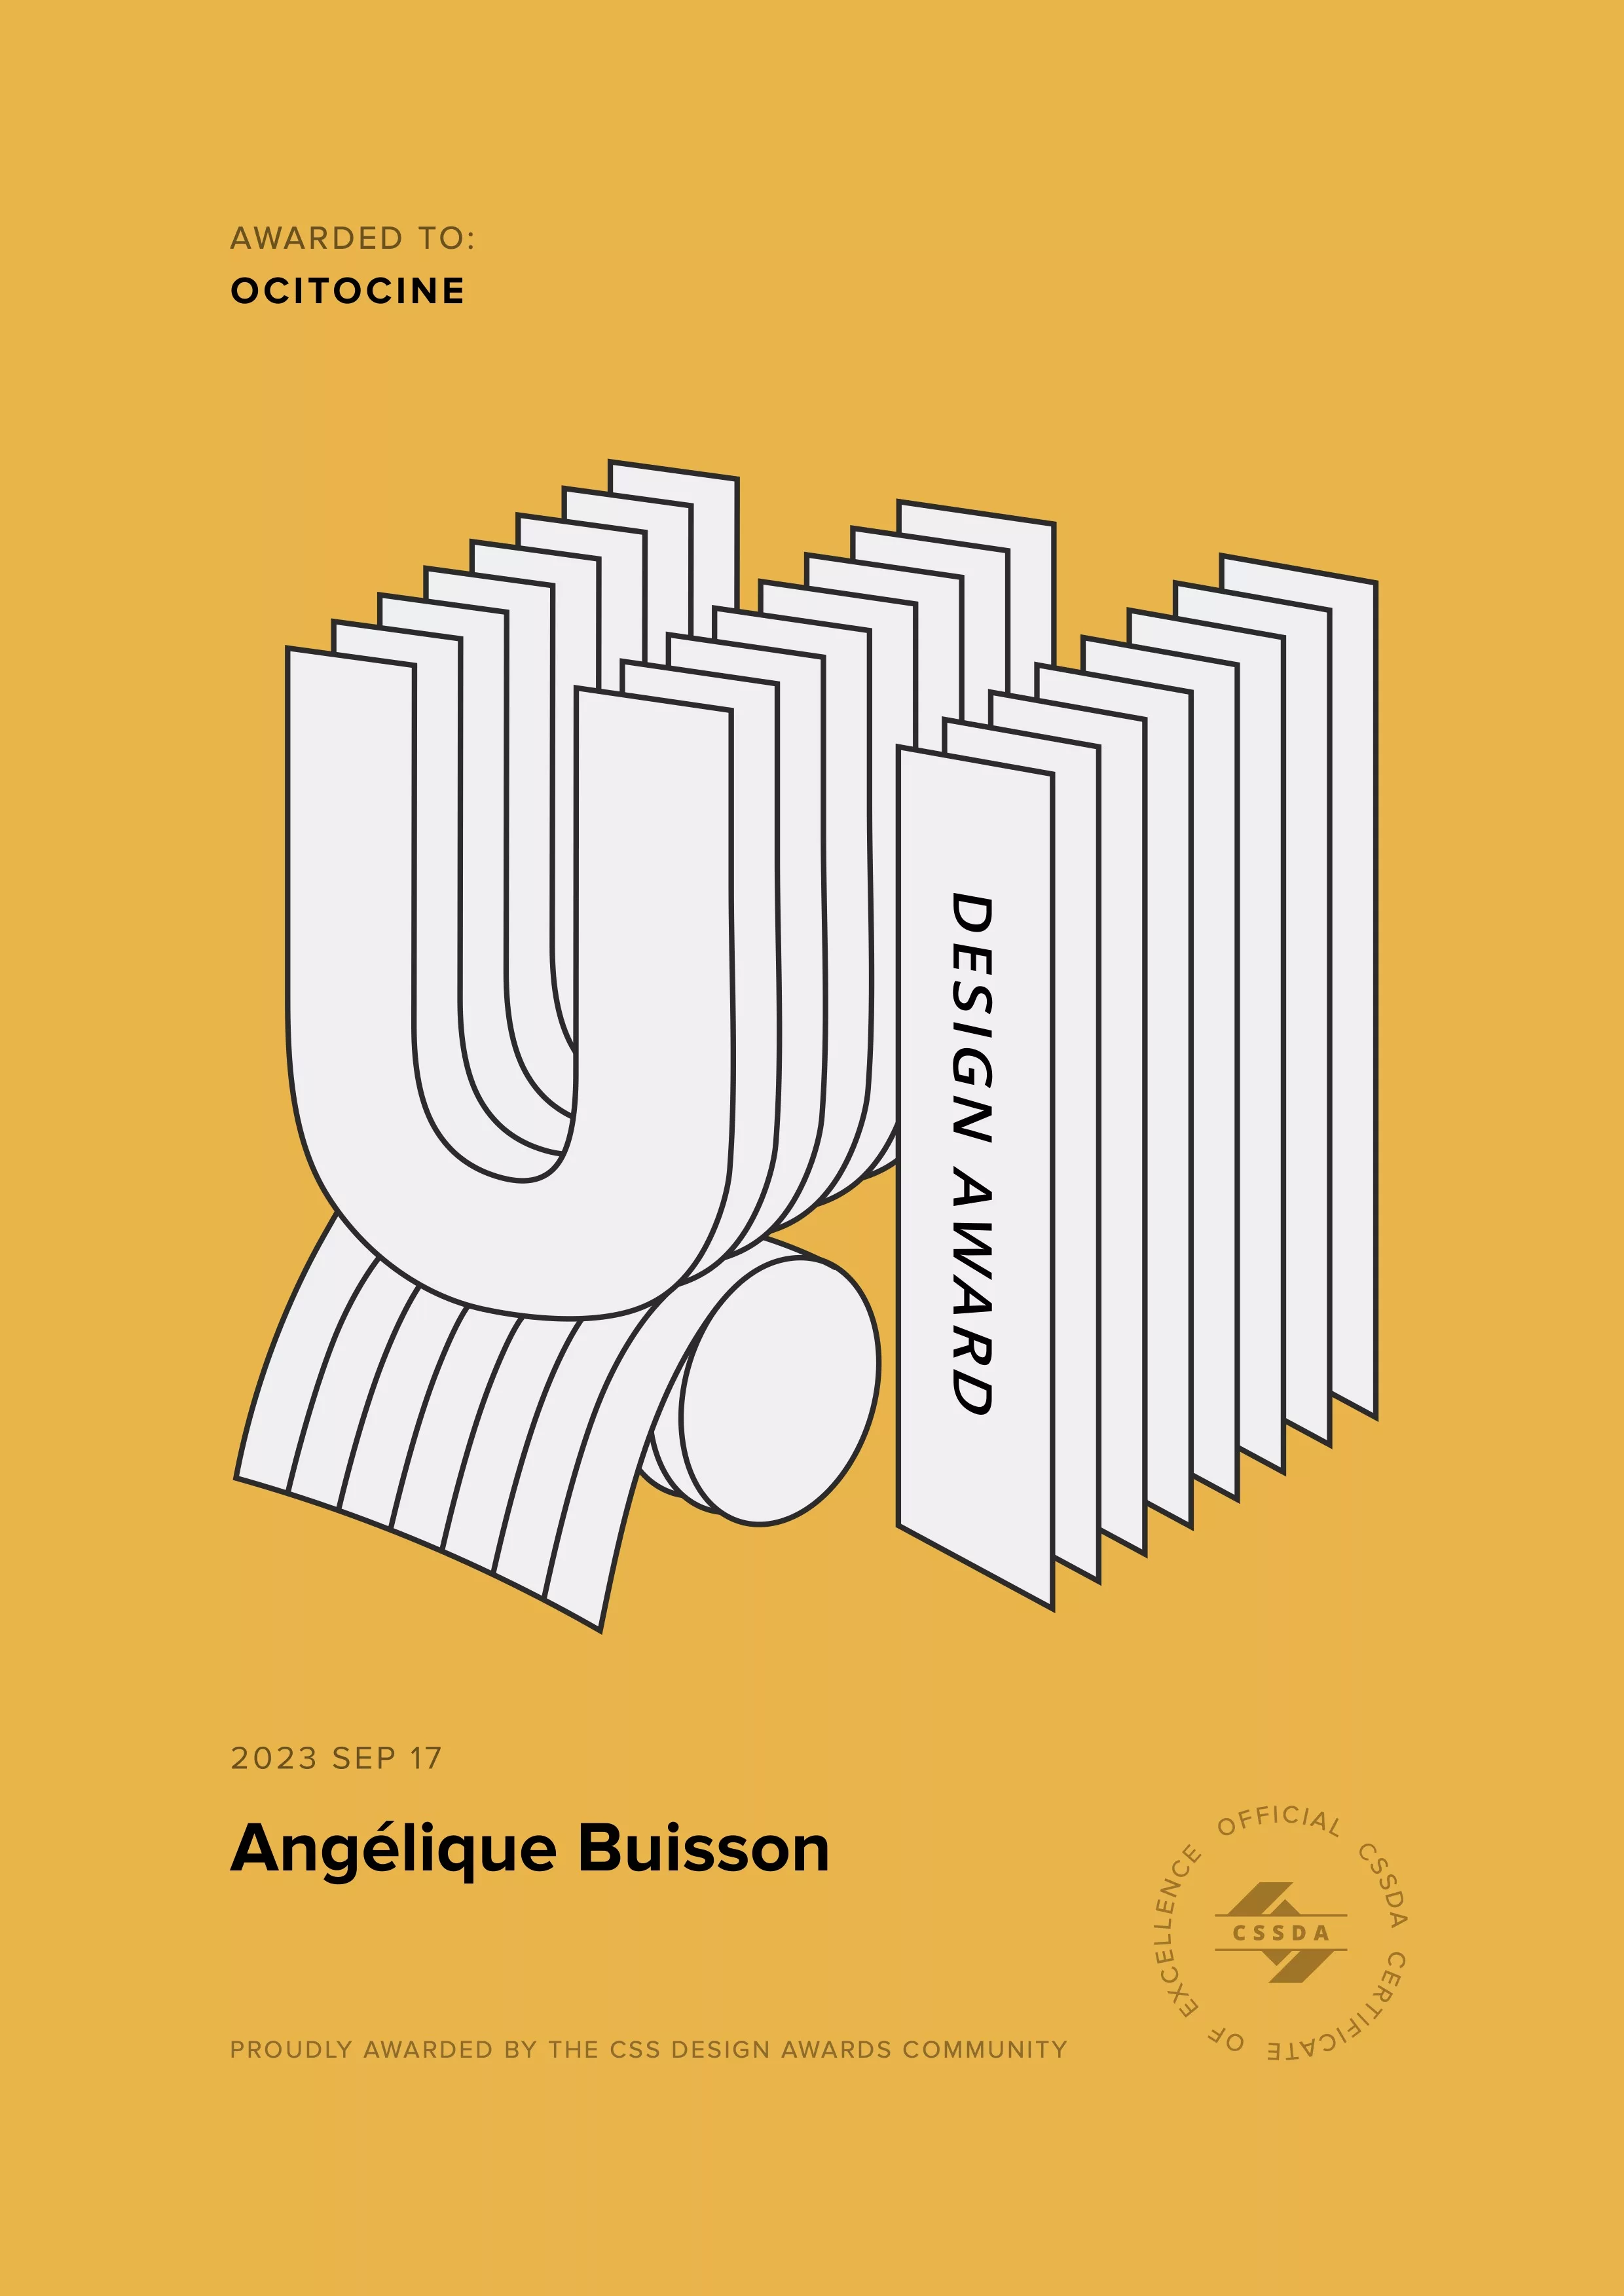 Ocitocine, agence créative web et branding, a remporté un prix "CSSDA UI Design Award" pour la réalisation du site web angelique-buisson.com